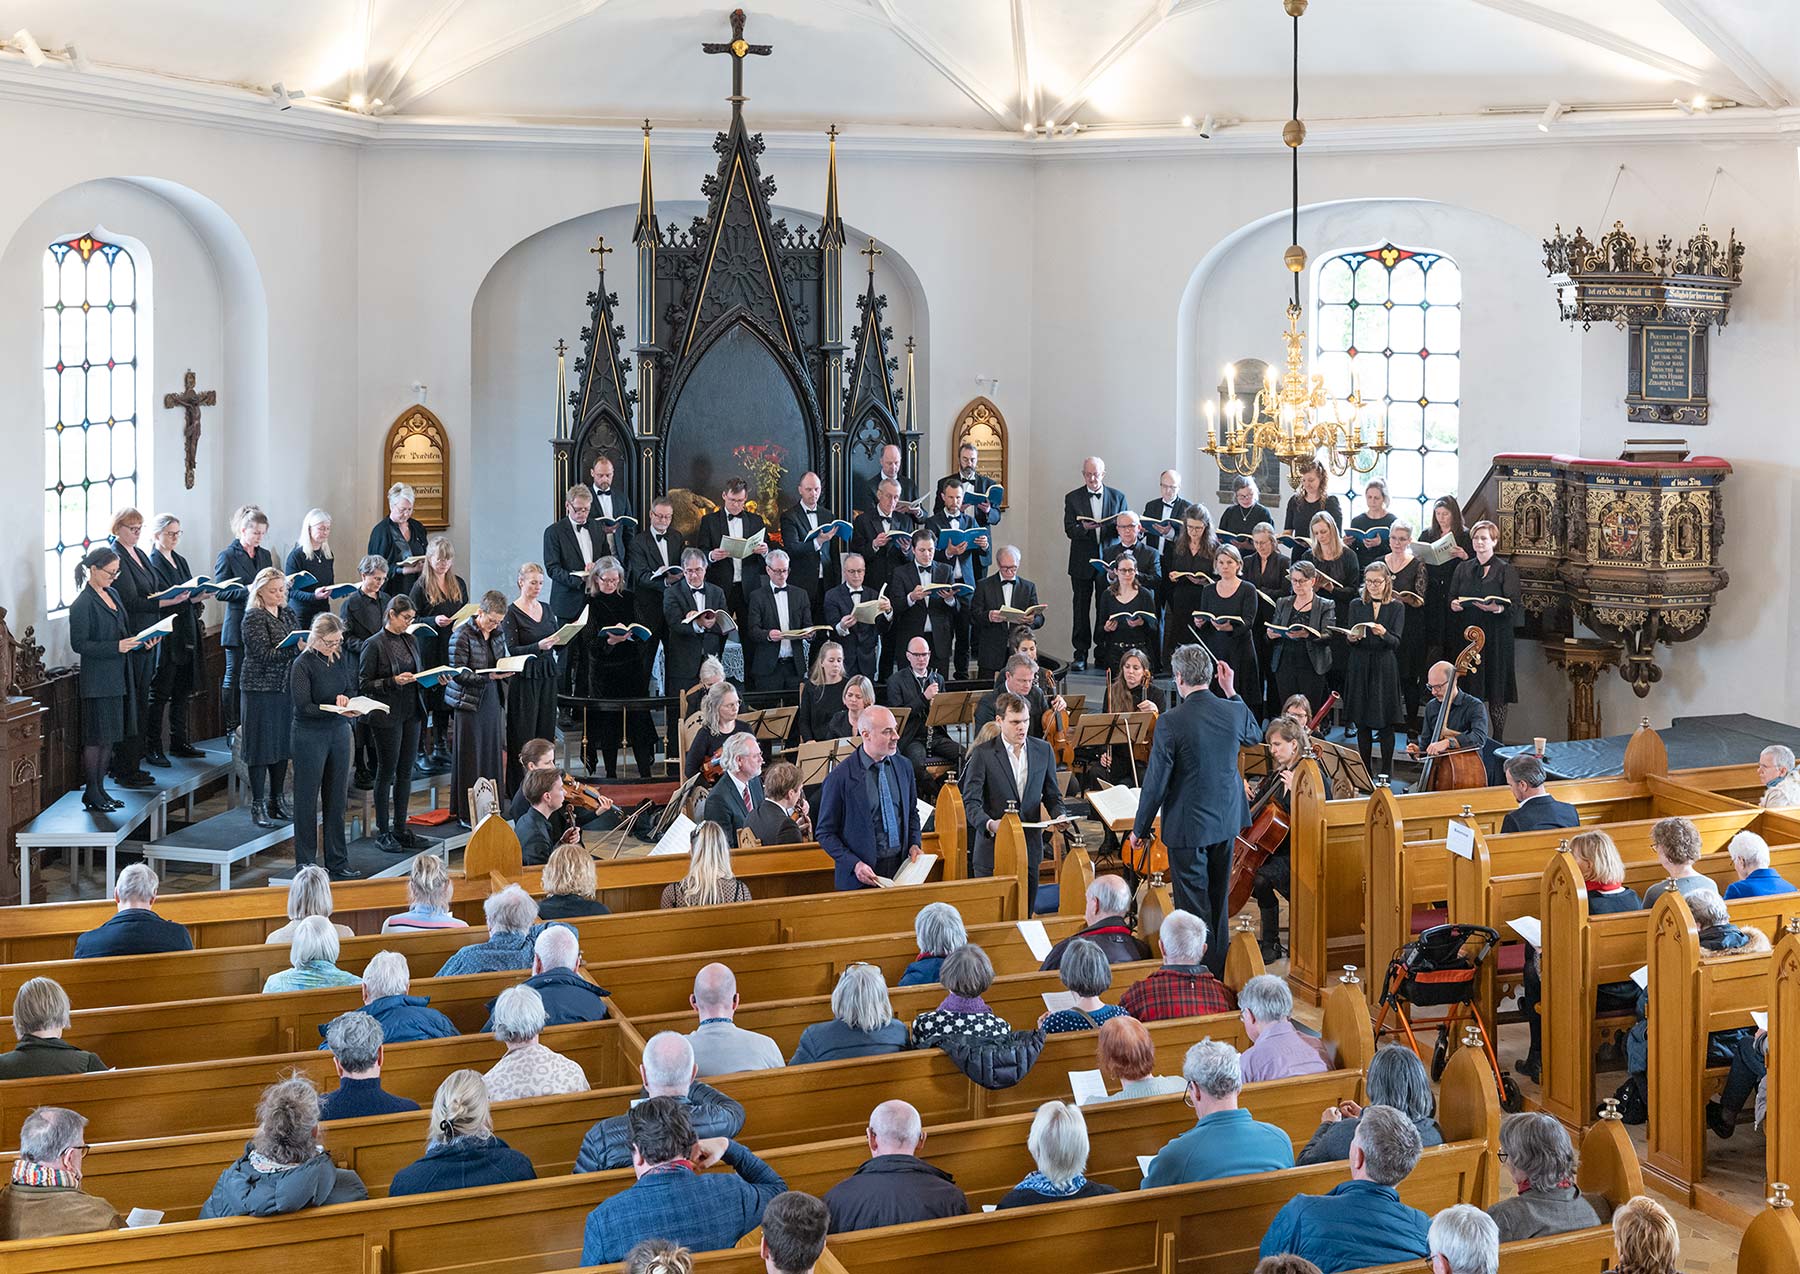 Johannespassionen opføres i Store Magleby Kirke. Foto: TorbenStender.